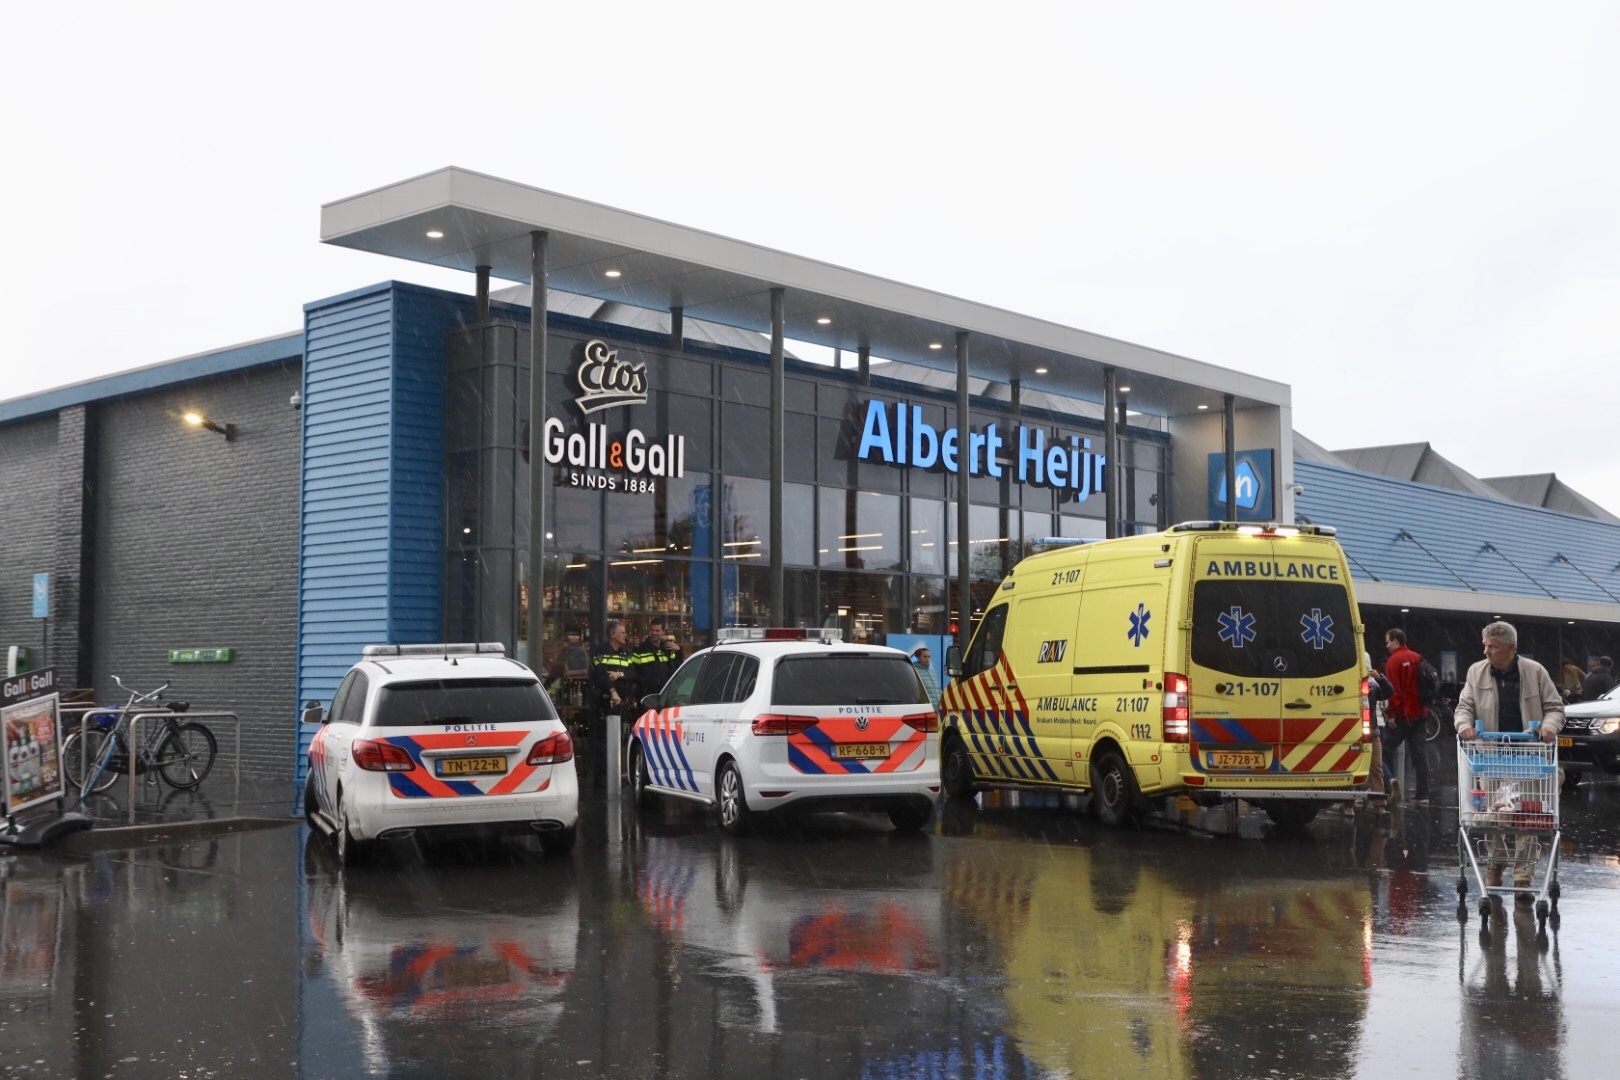 Politie en ambulance voor Albert Heijn